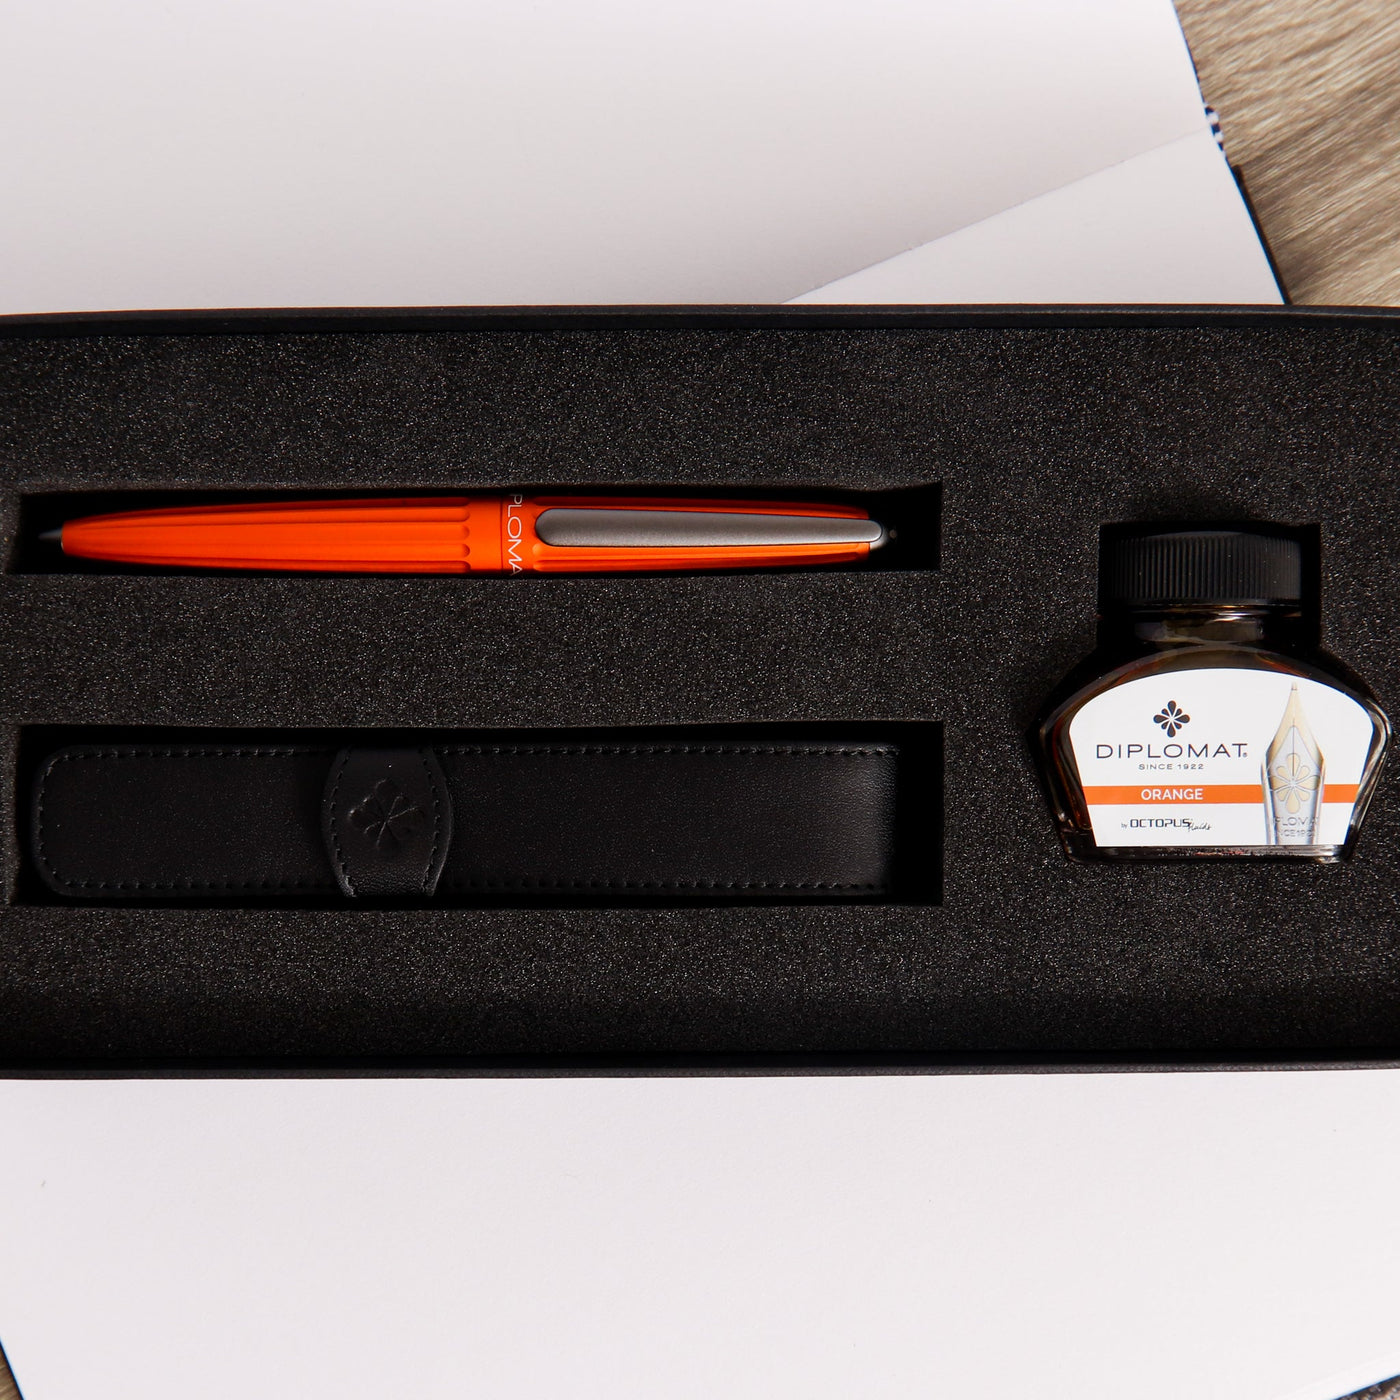 Diplomat-Aero-Orange-Fountain-Pen-Gift-Set-Packaging